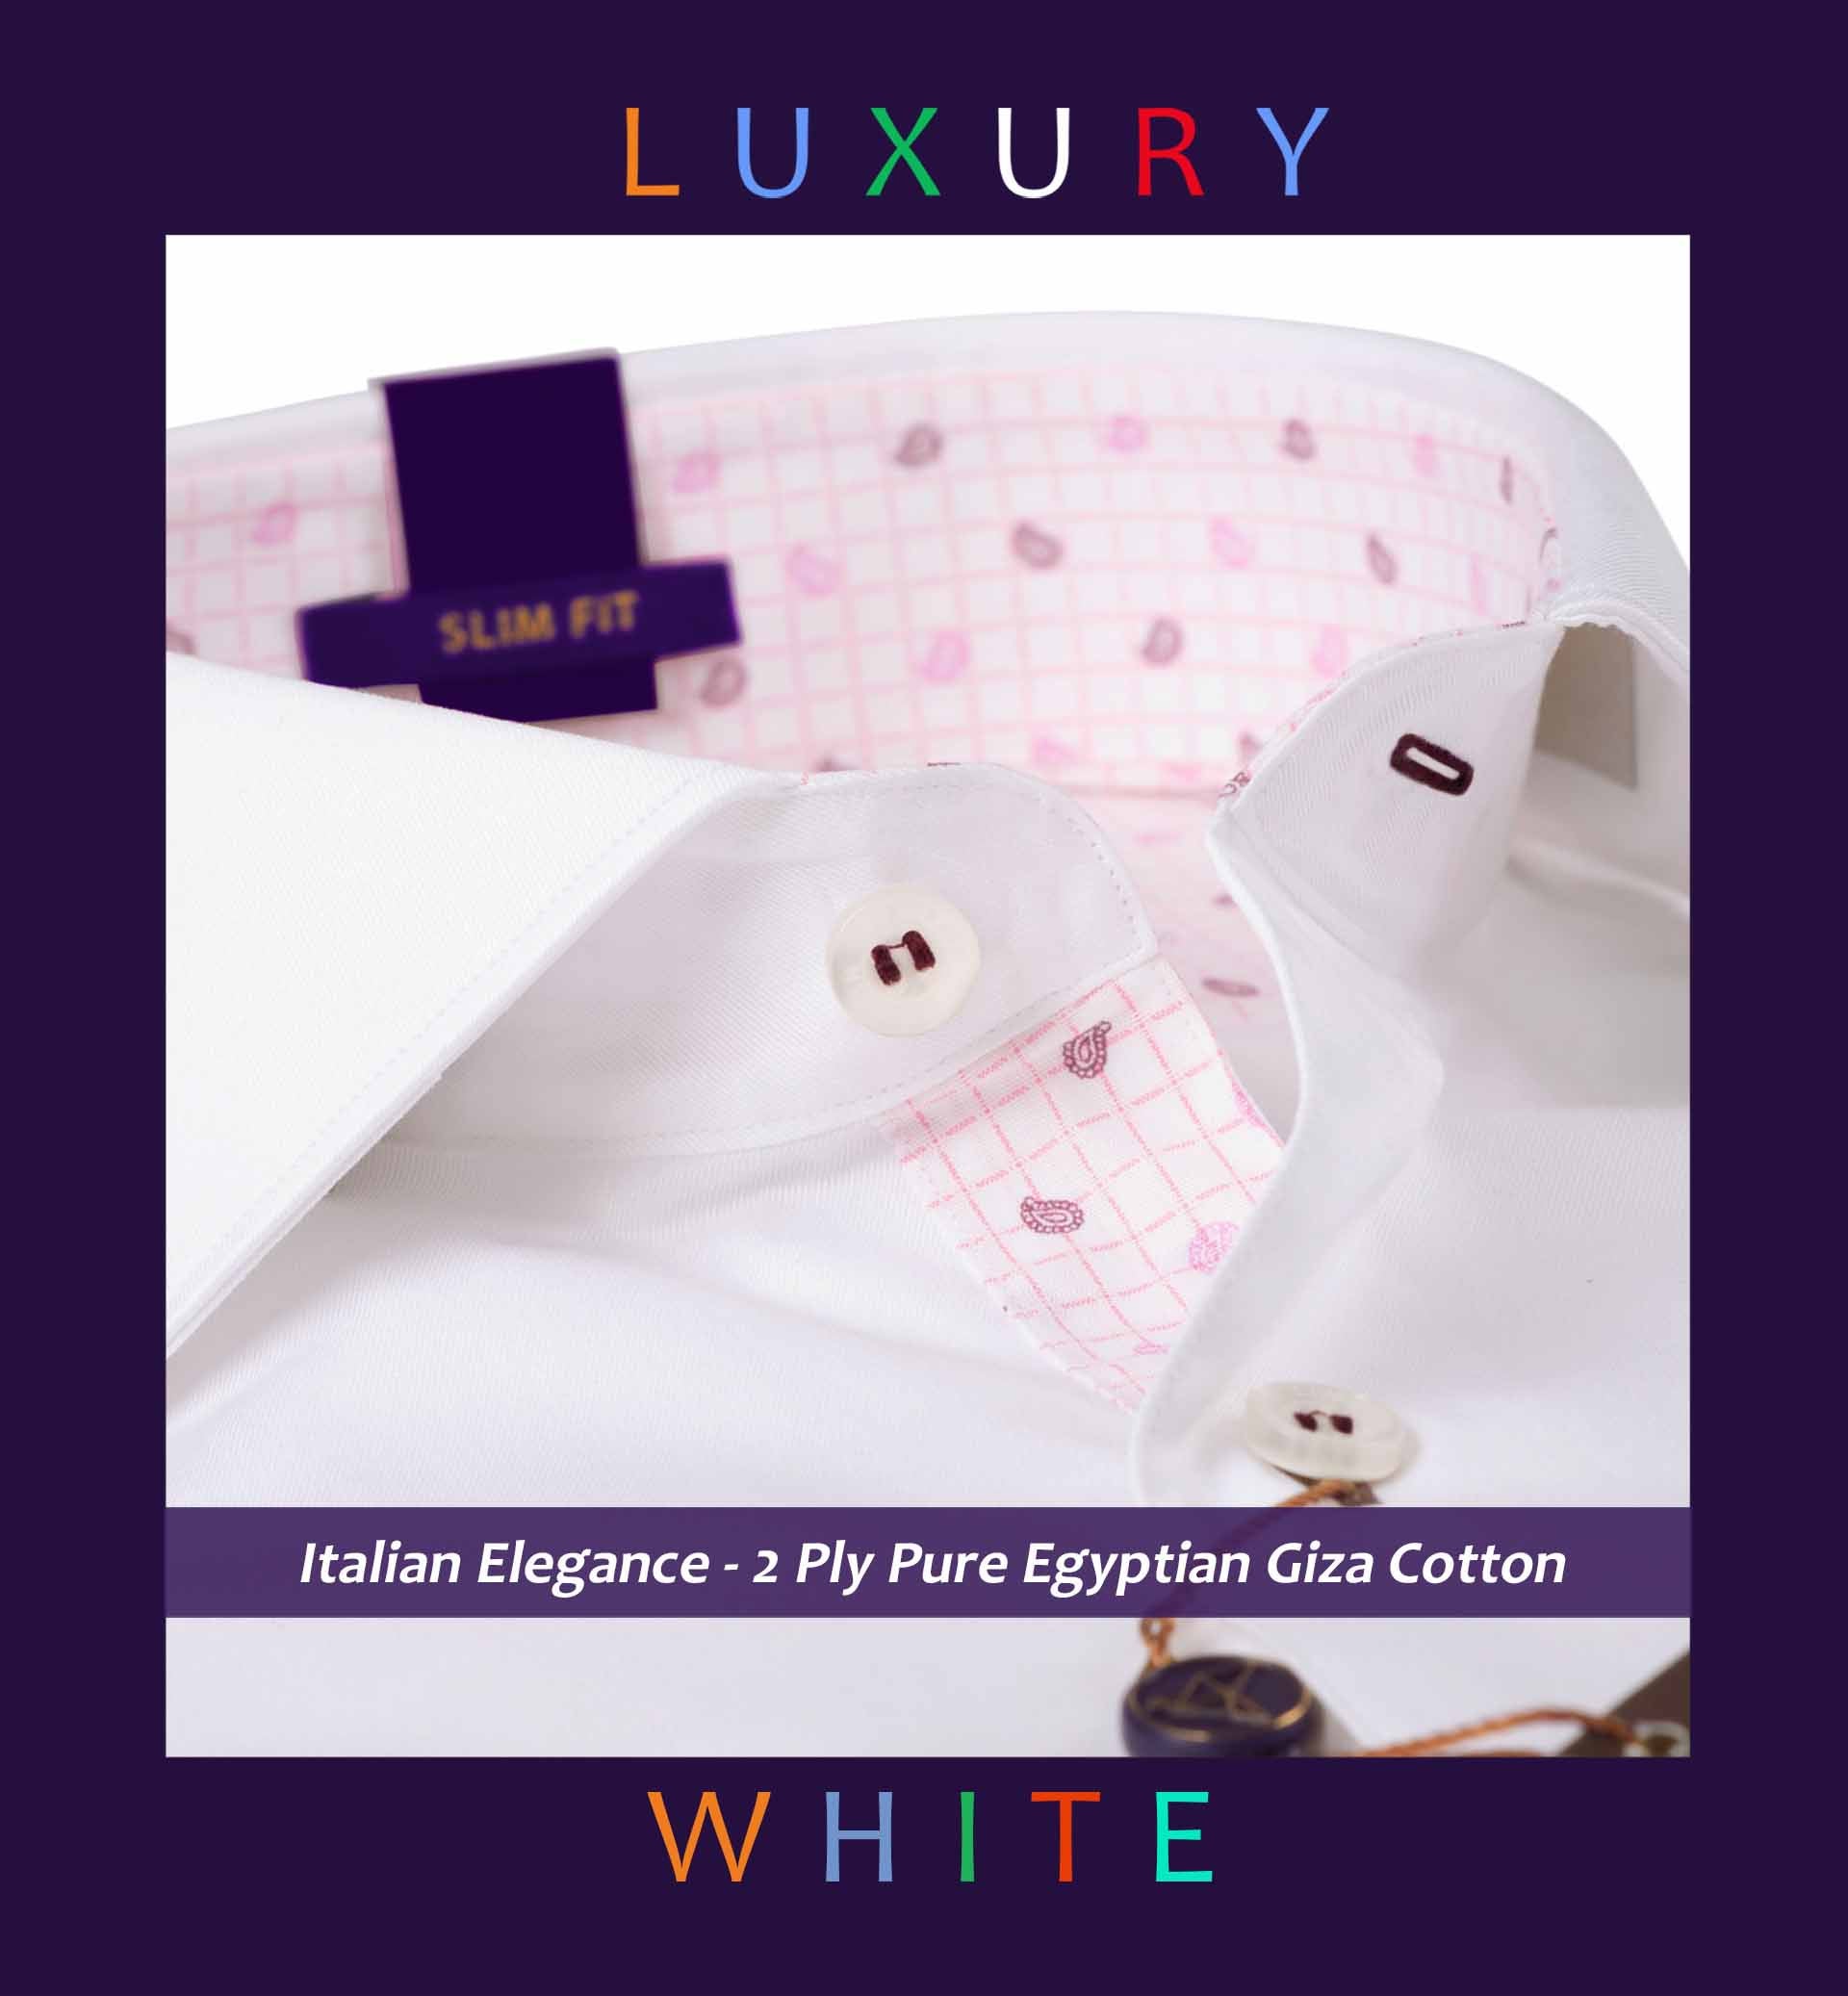 Monza- Pristine White & Print Contrast- 2 Ply Pure Egyptian Giza Cotton